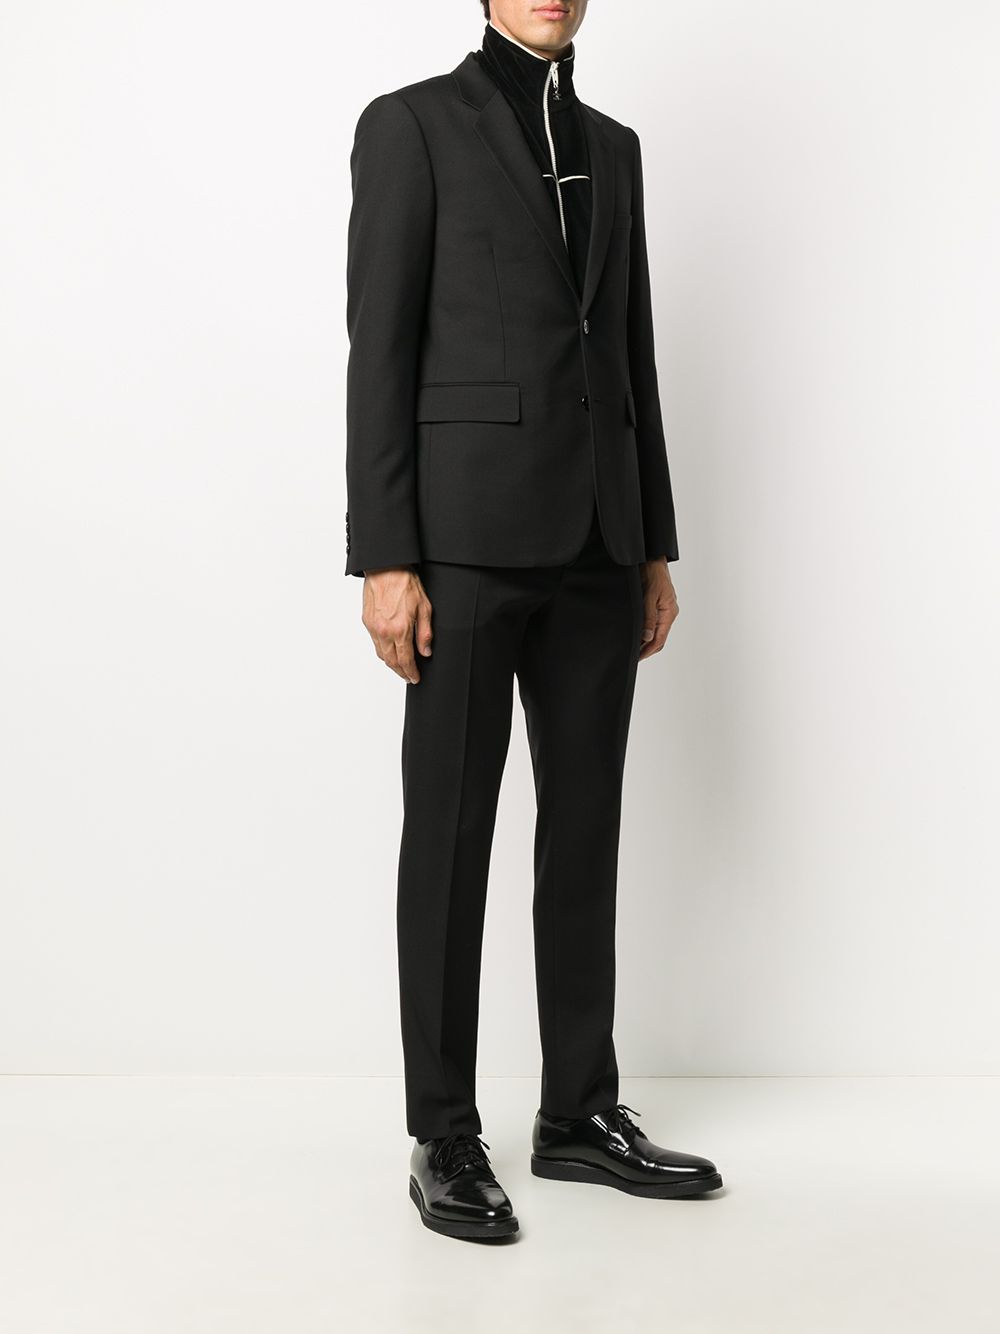 Saint Laurent slim-cut Suit - Farfetch